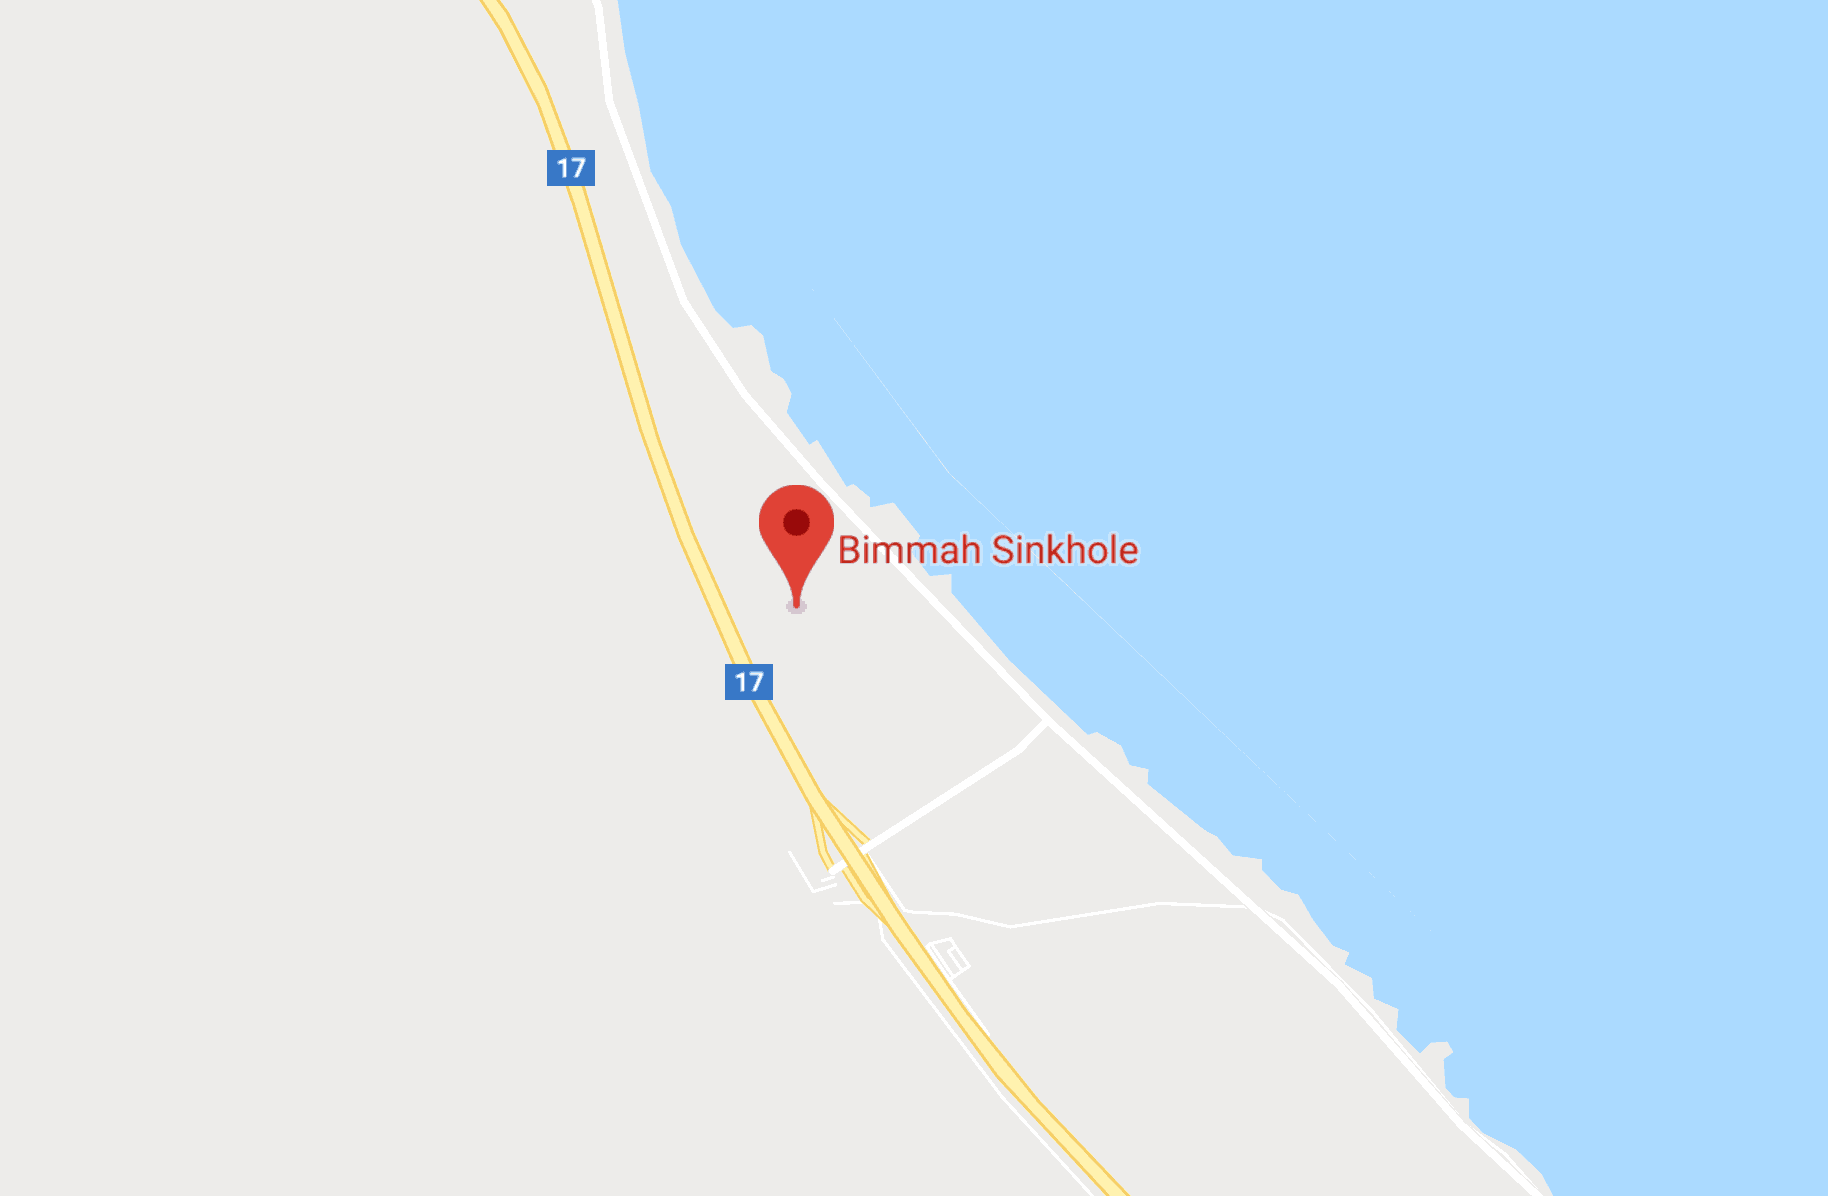 Google maps location of Bimmah Sinkhole in Oman